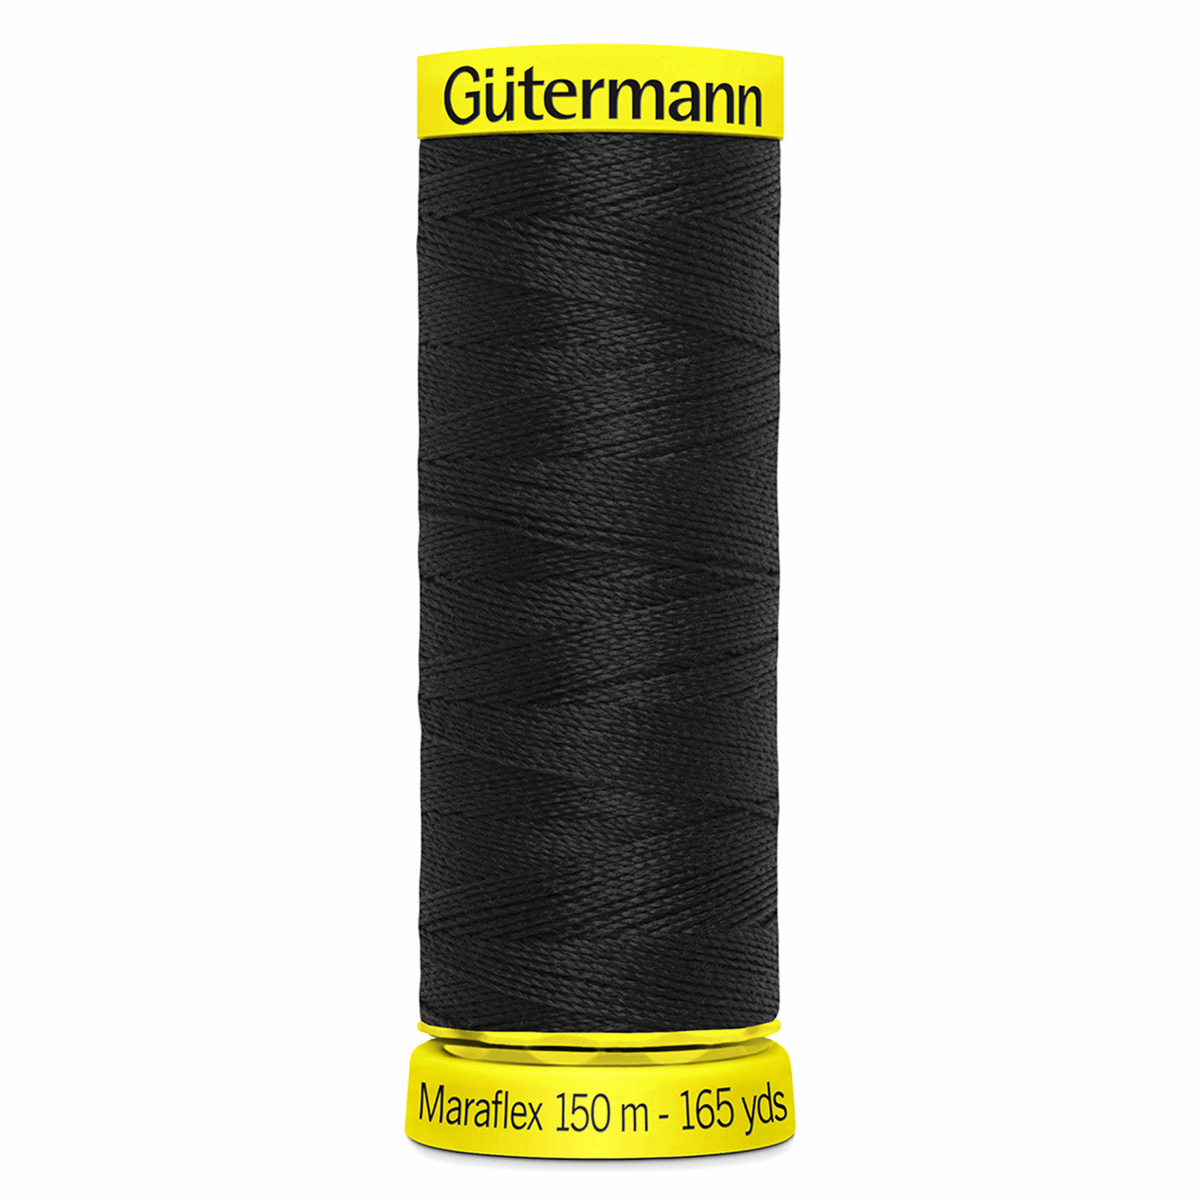 Gutermann Maraflex Elastic Sewing Thread 150m Black